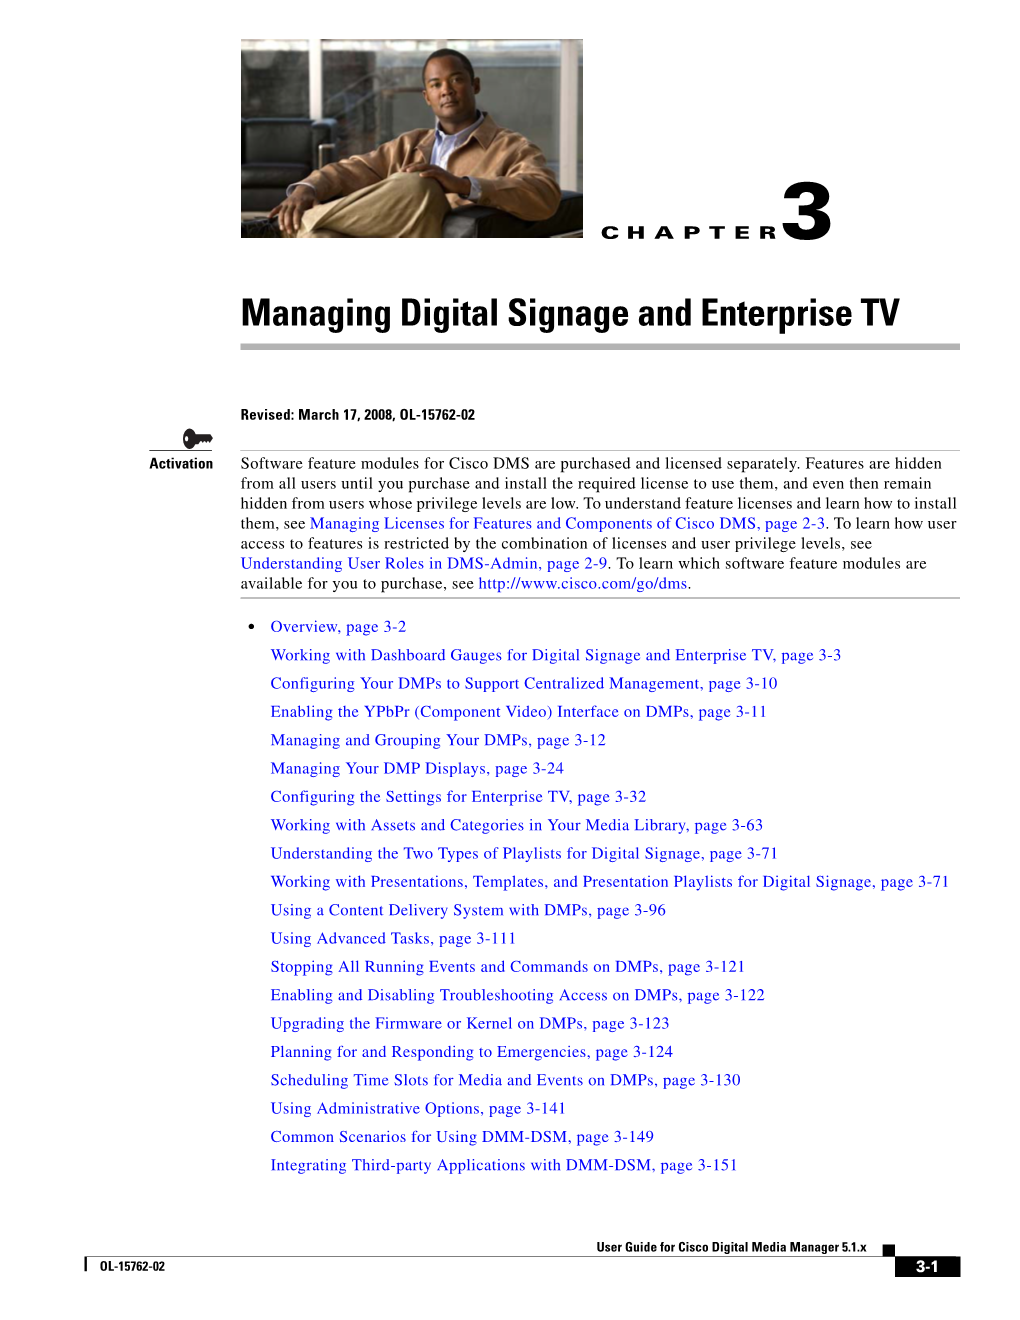 Managing Digital Signage and Enterprise TV